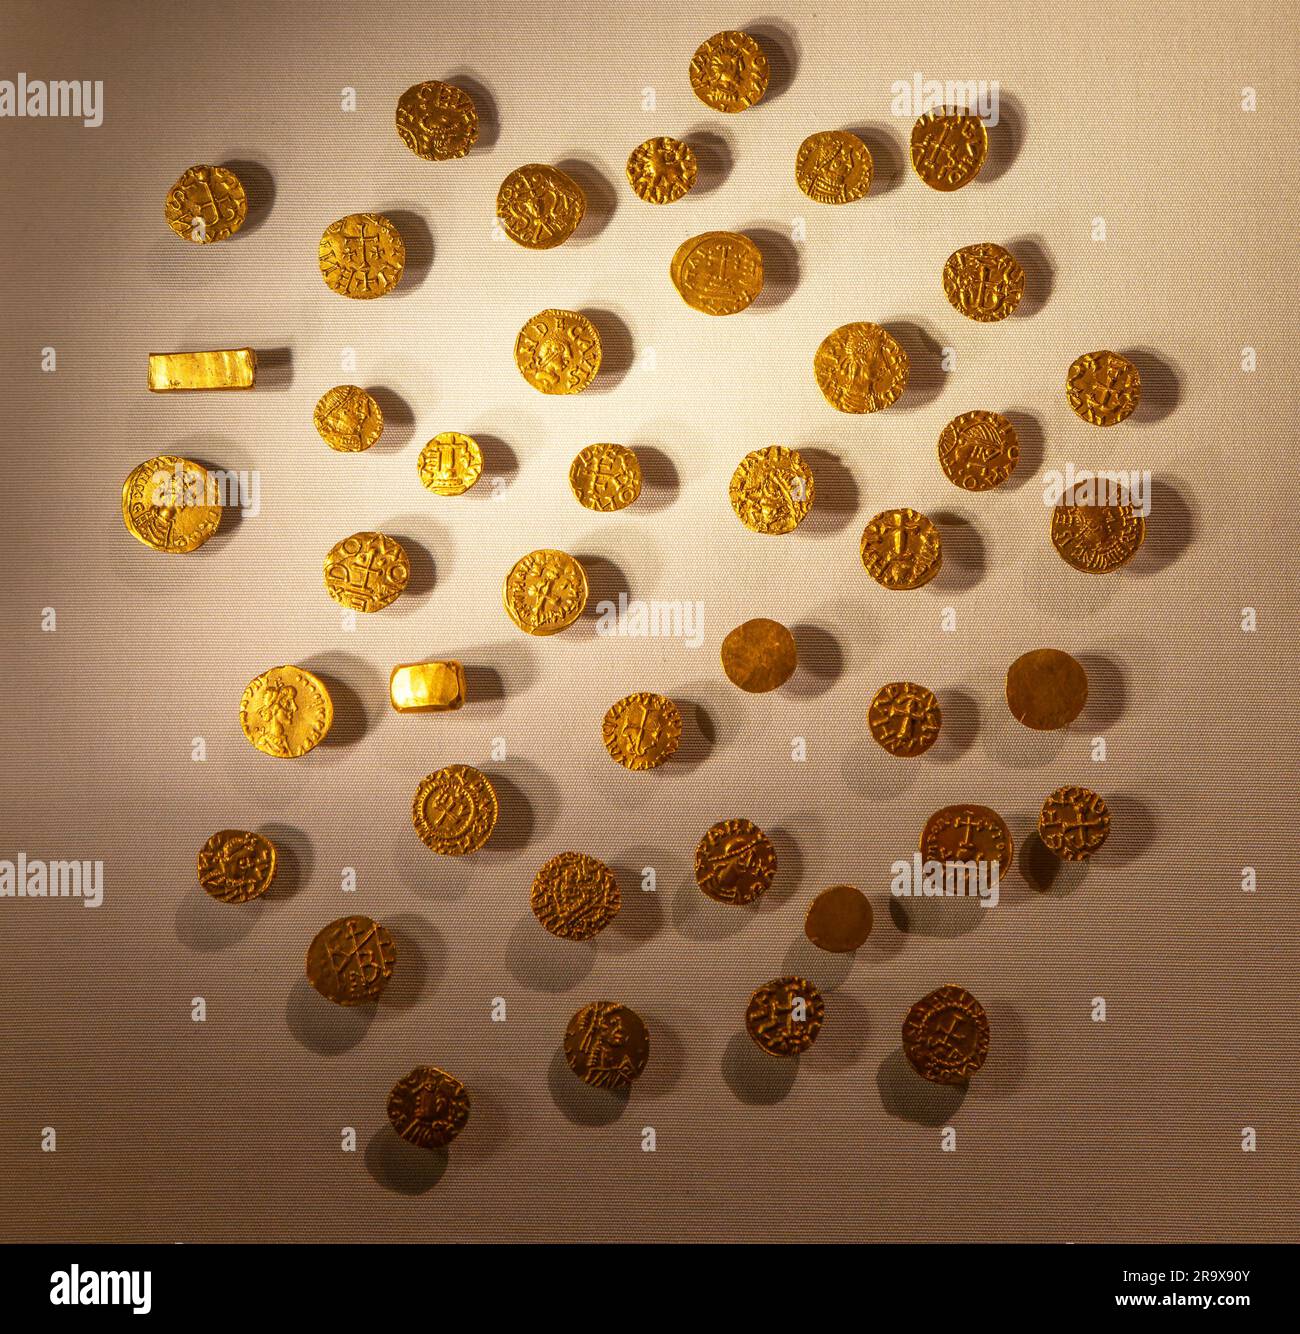 Pièces d'or anglo-saxonnes de monnaies franques trouvées dans le sac à main du roi exposé, Sutton Hoo, Suffolk, Wbgland, UKUK Banque D'Images